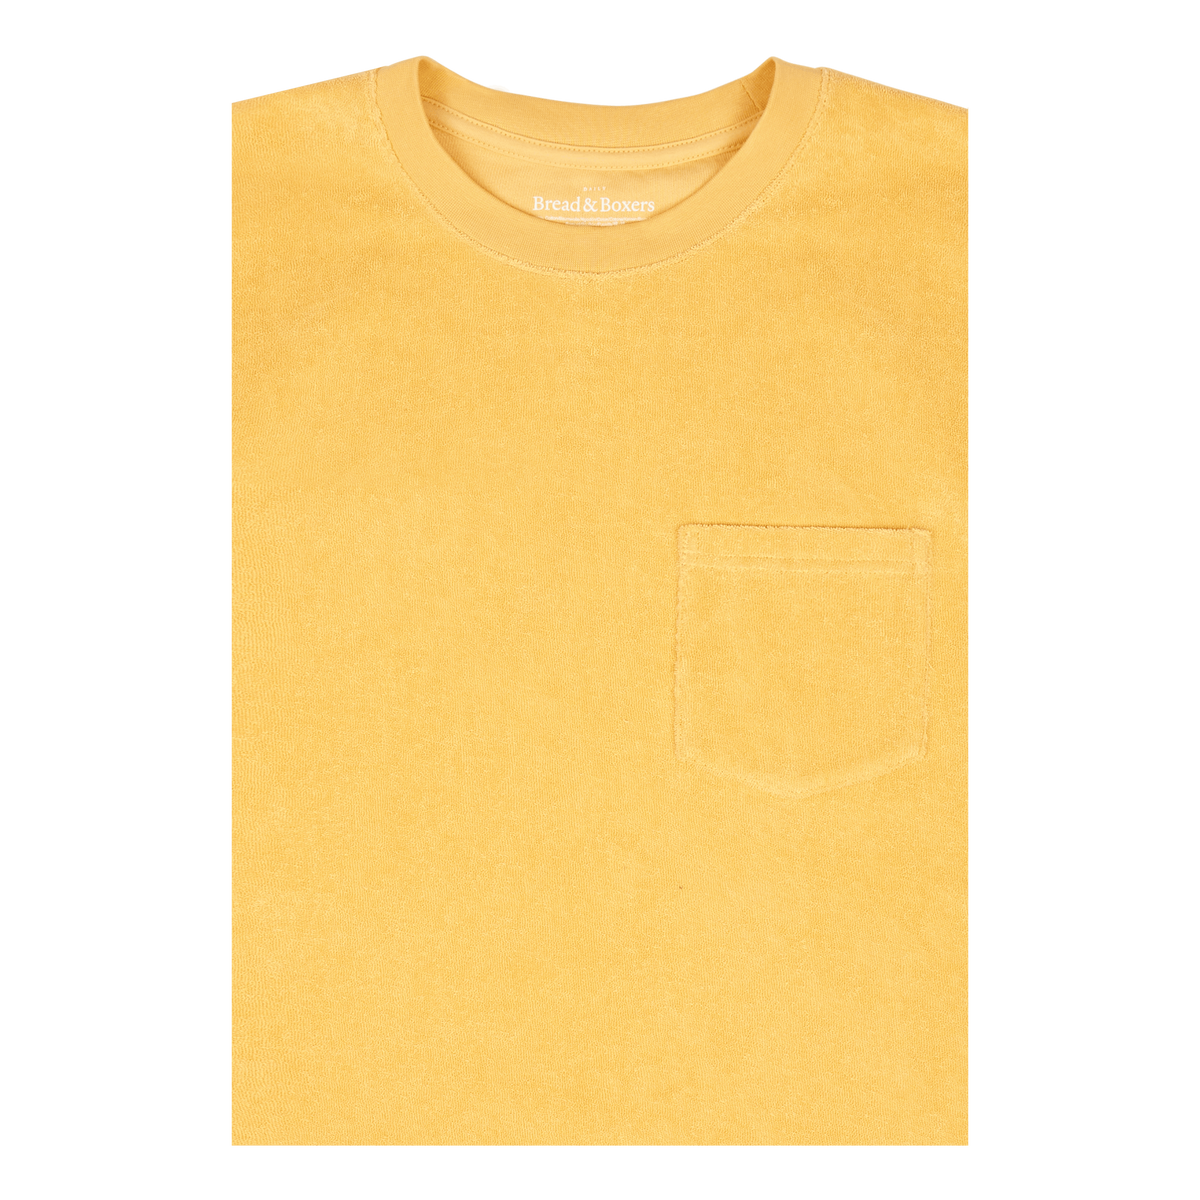 Terry T-shirt Sahara Sun